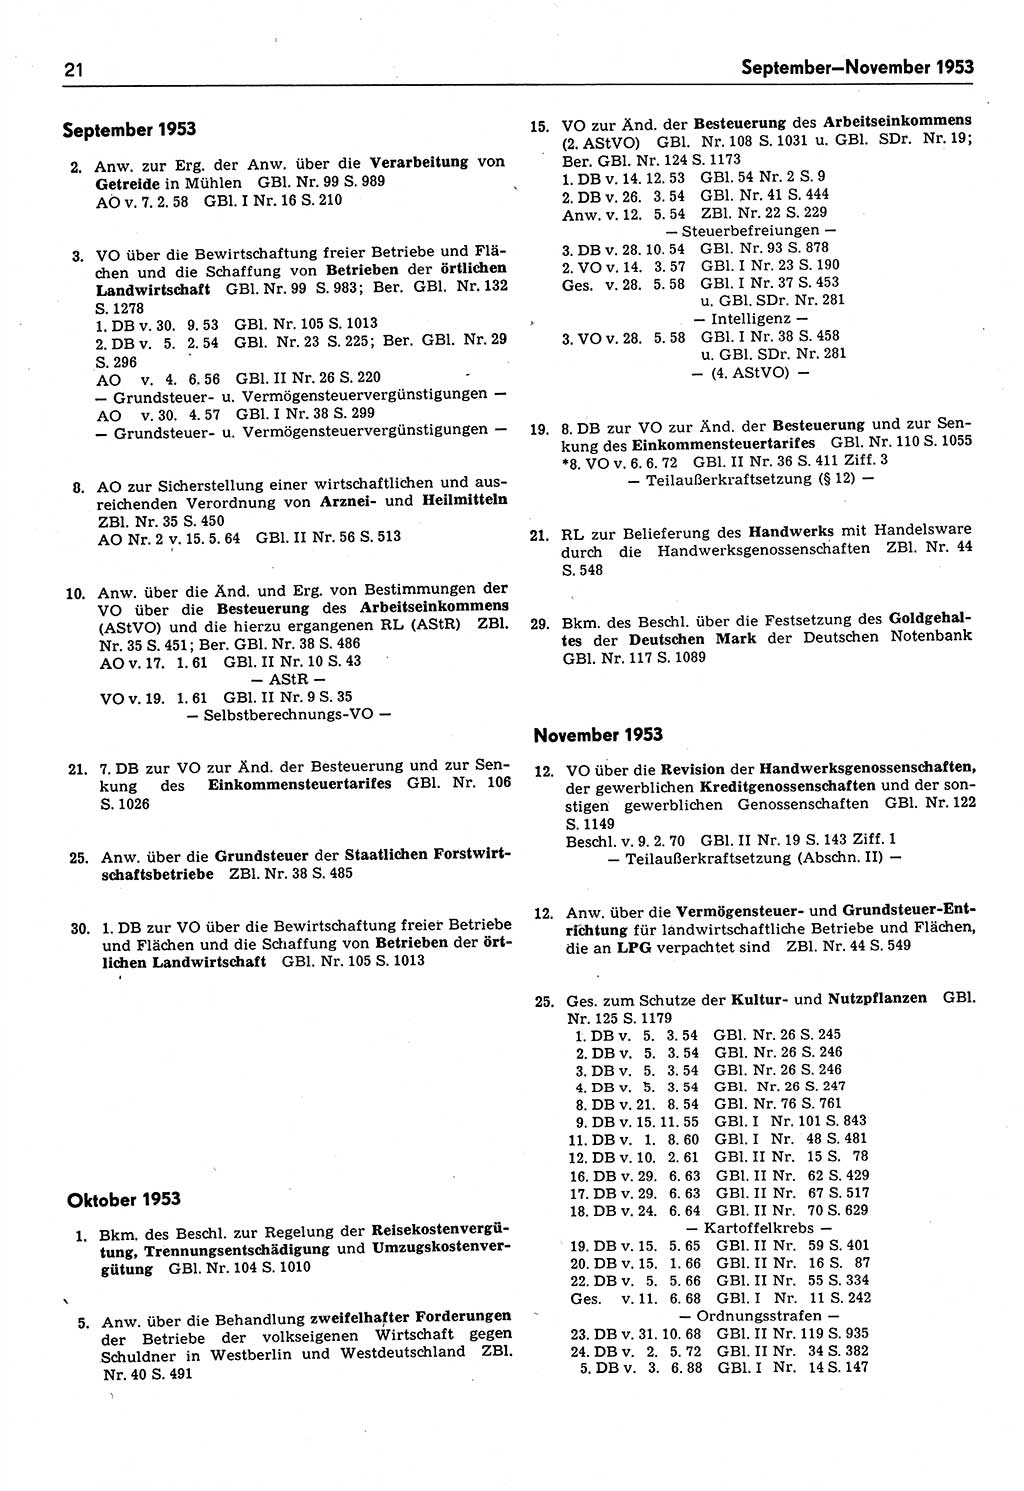 Das geltende Recht der Deutschen Demokratischen Republik (DDR) 1949-1988, Seite 21 (Gelt. R. DDR 1949-1988, S. 21)